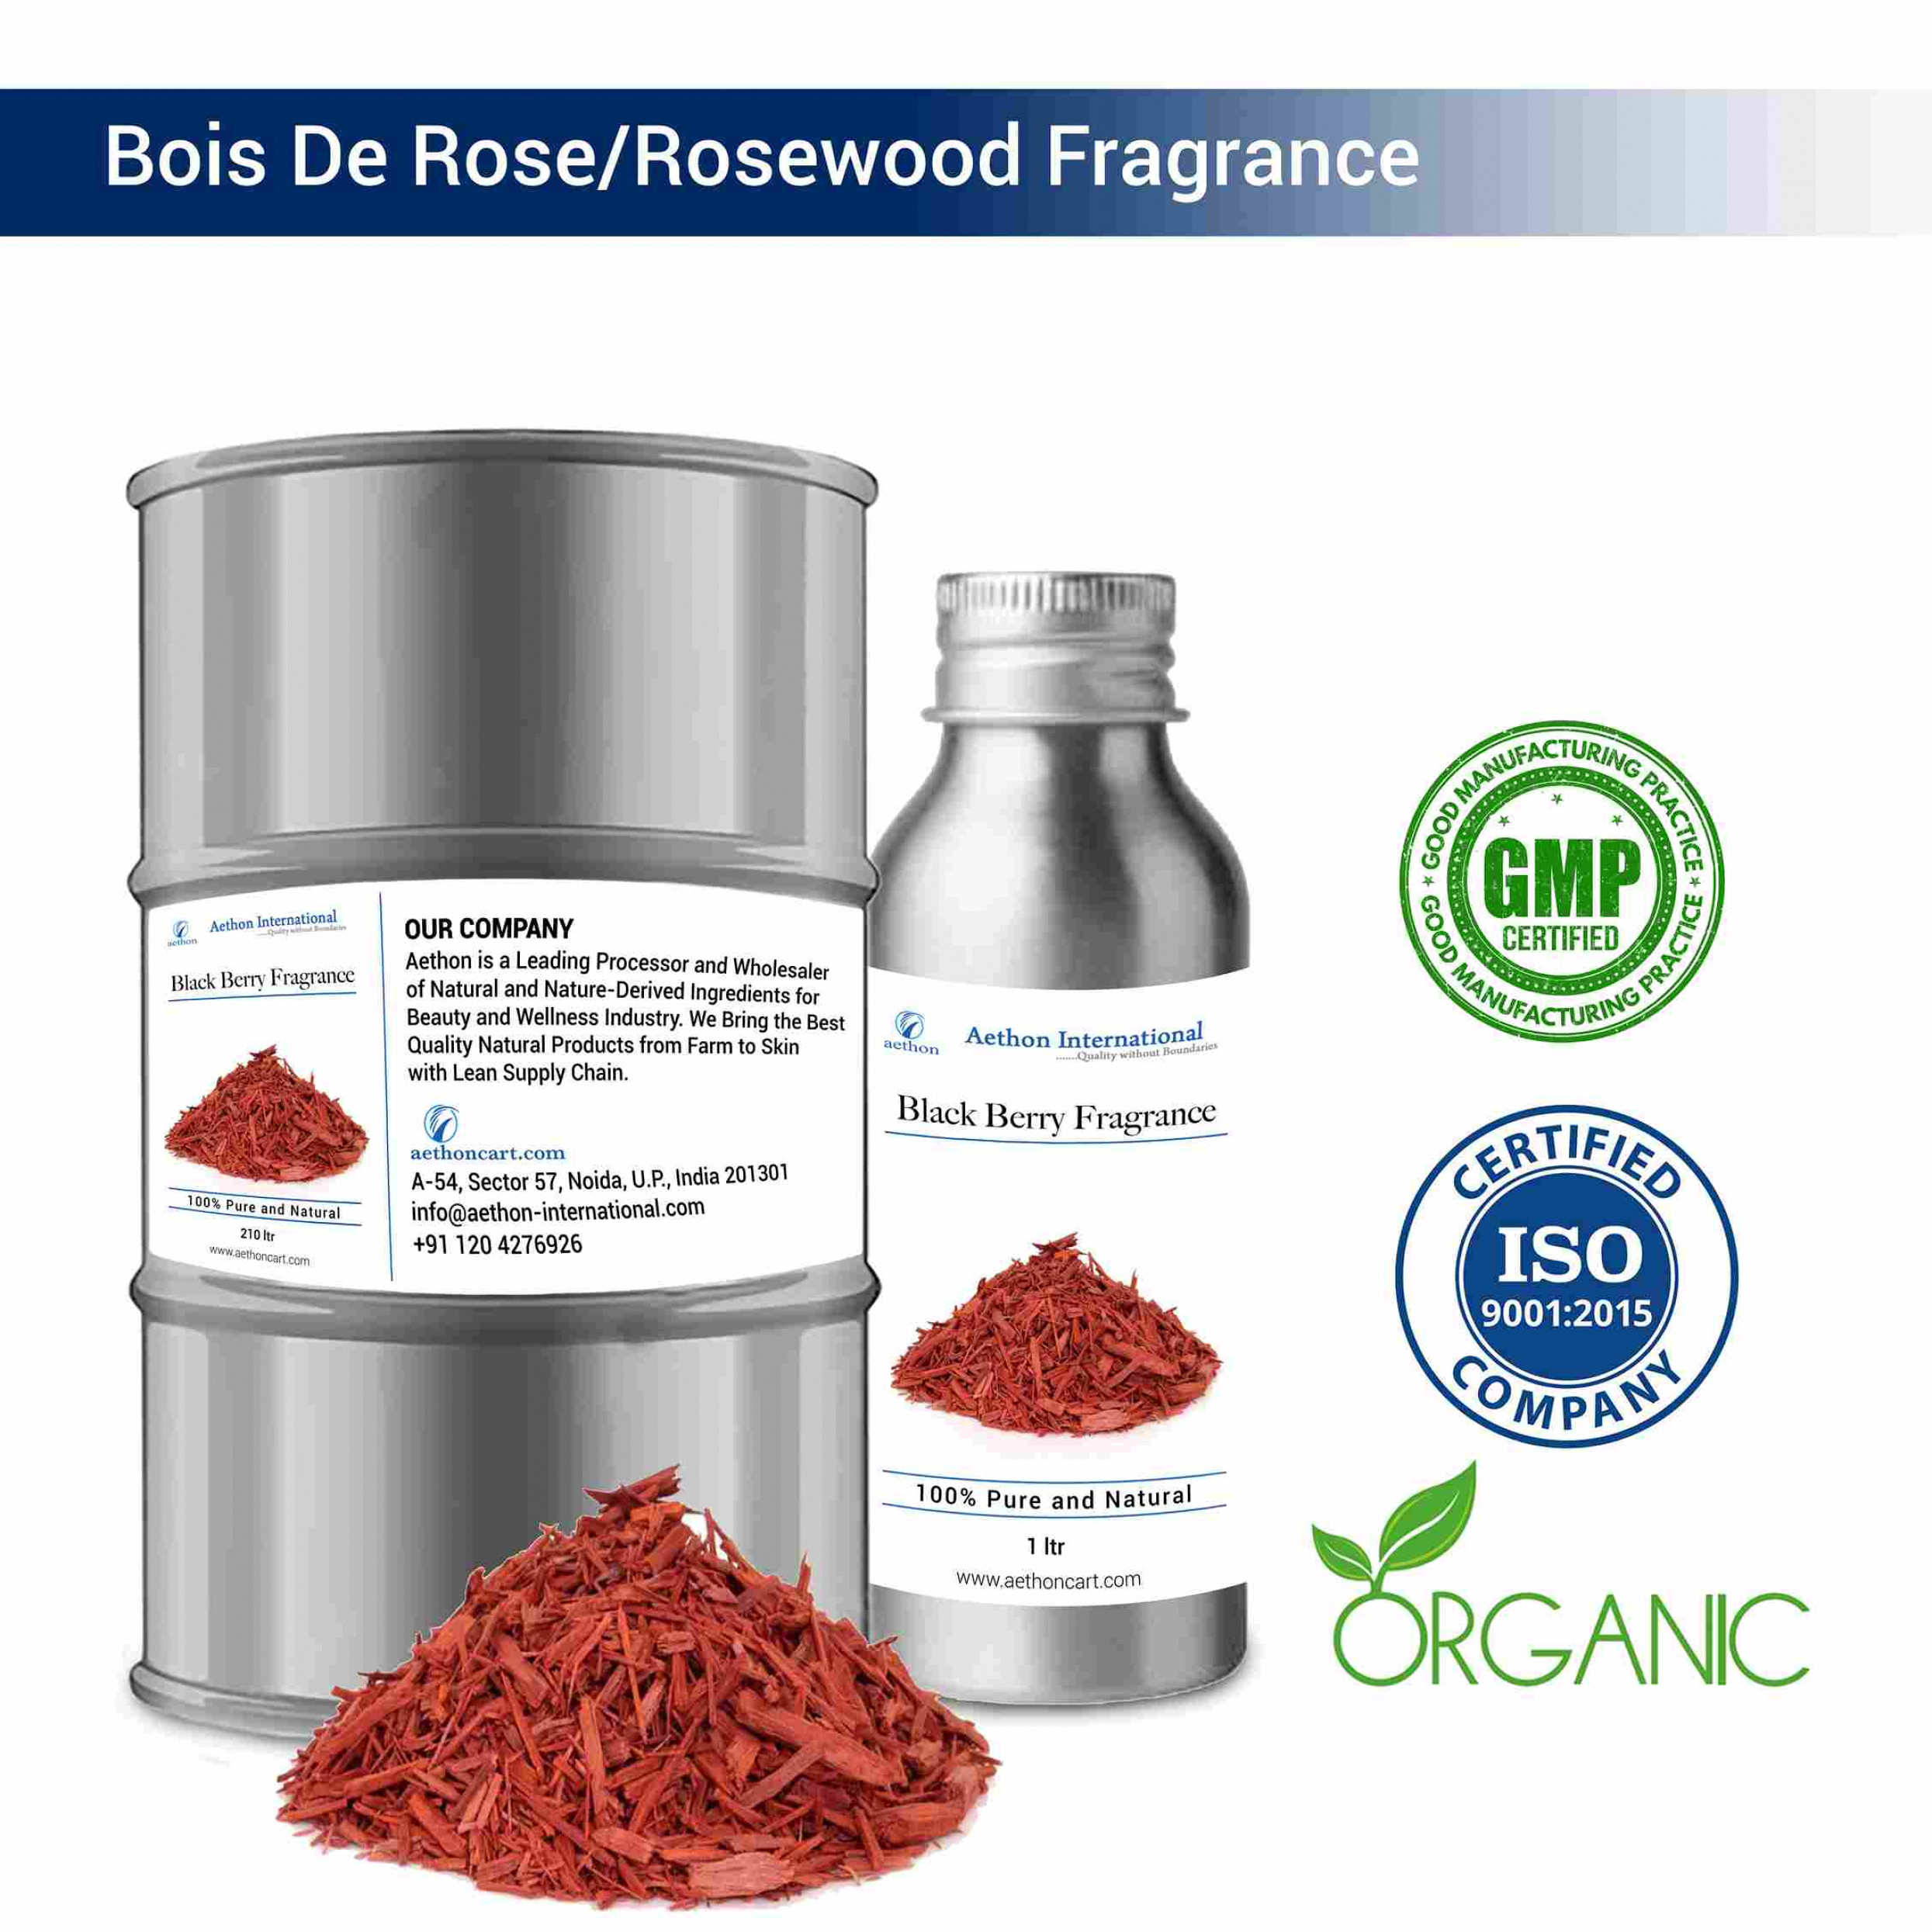 Bois De Rose Rosewood Fragrance